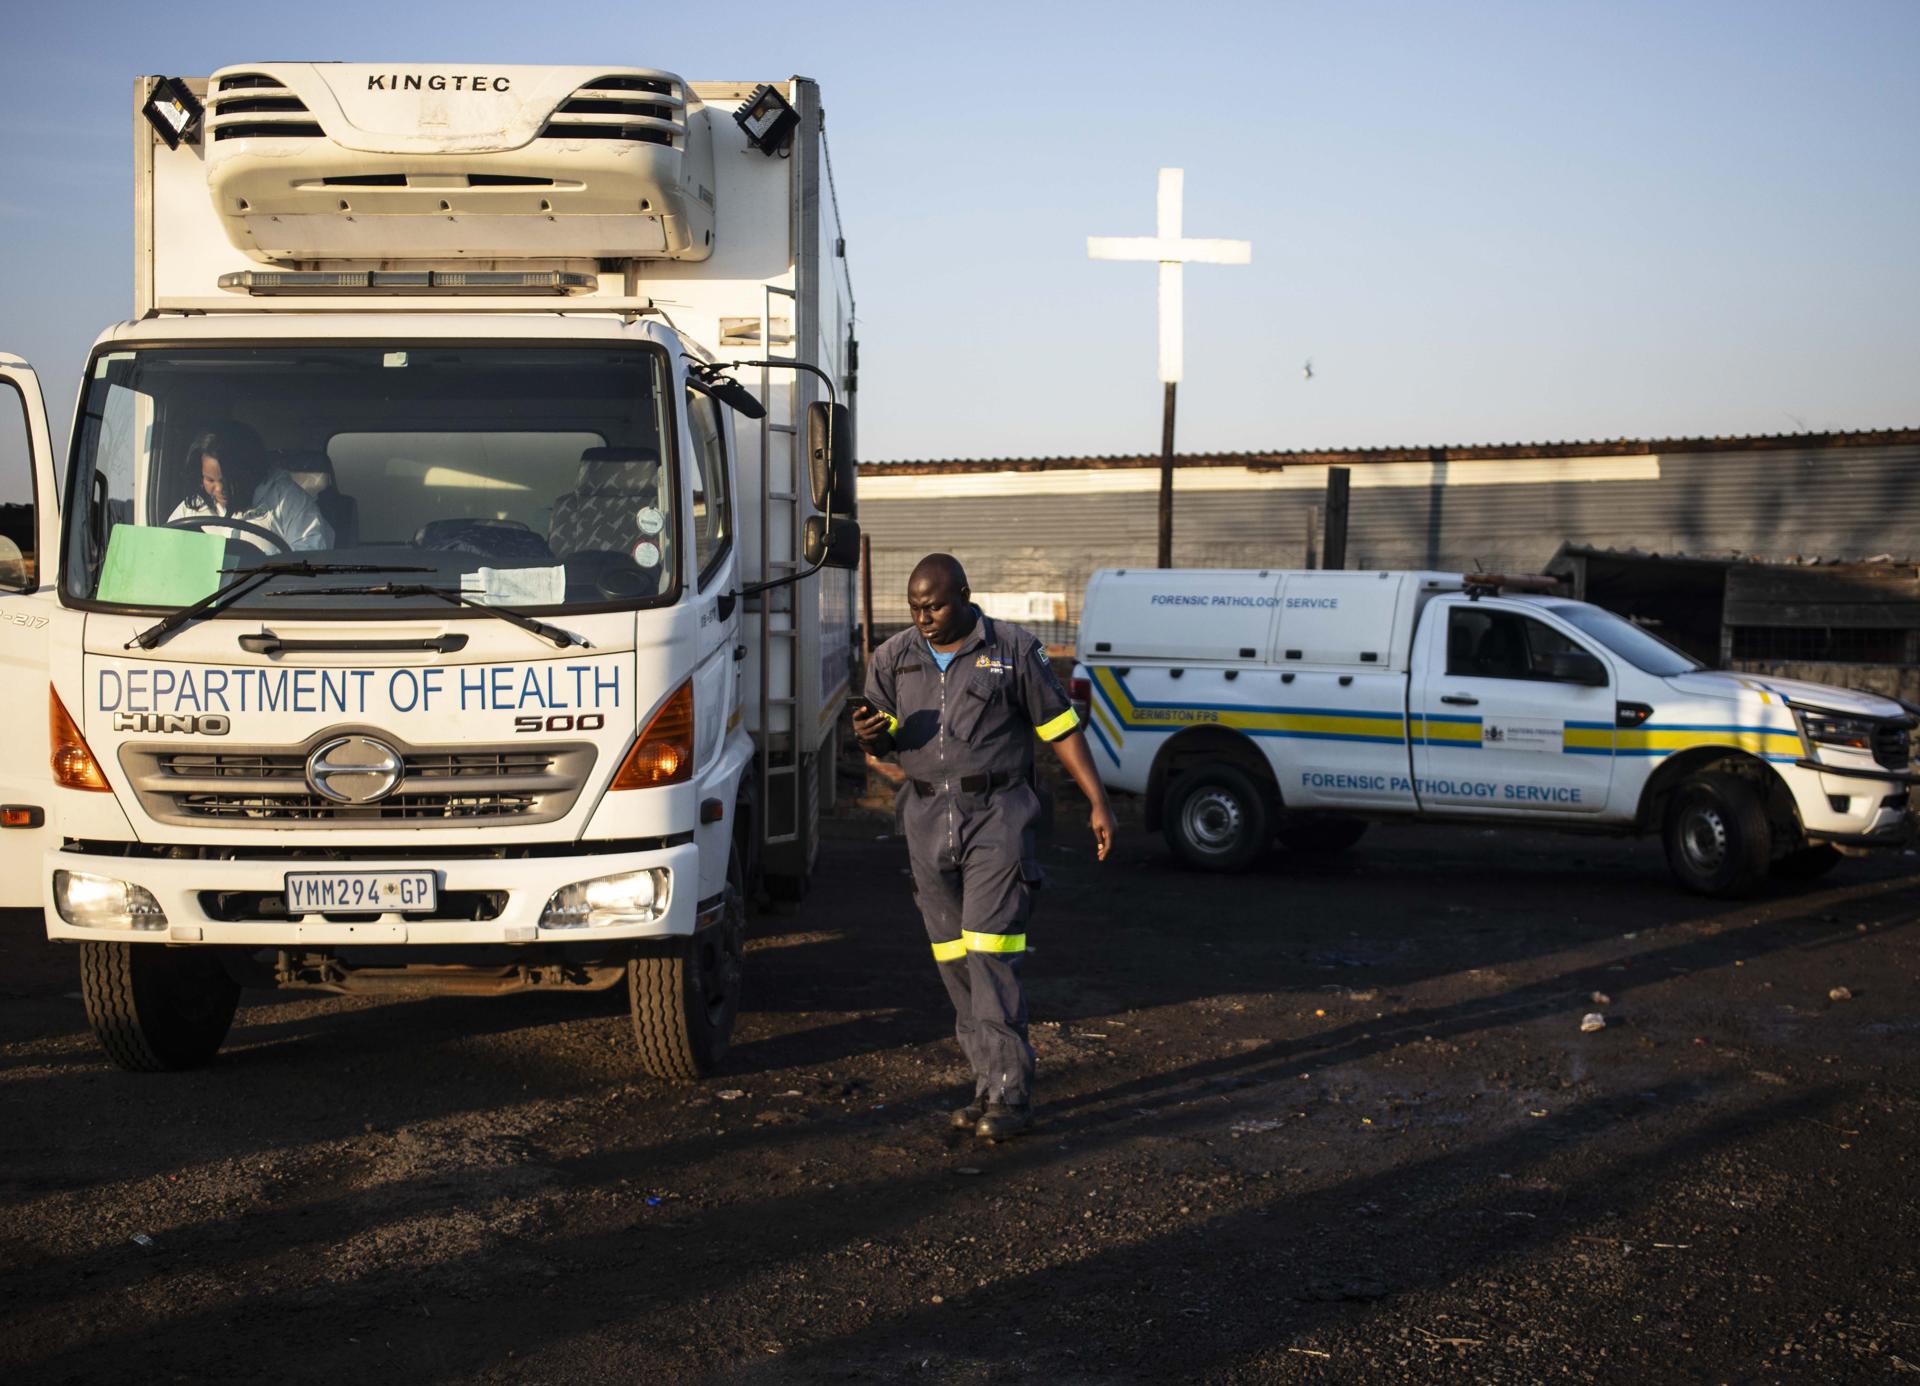 Ascienden a 17 los muertos por una fuga de gas en un asentamiento informal en Sudáfrica (Fotos)